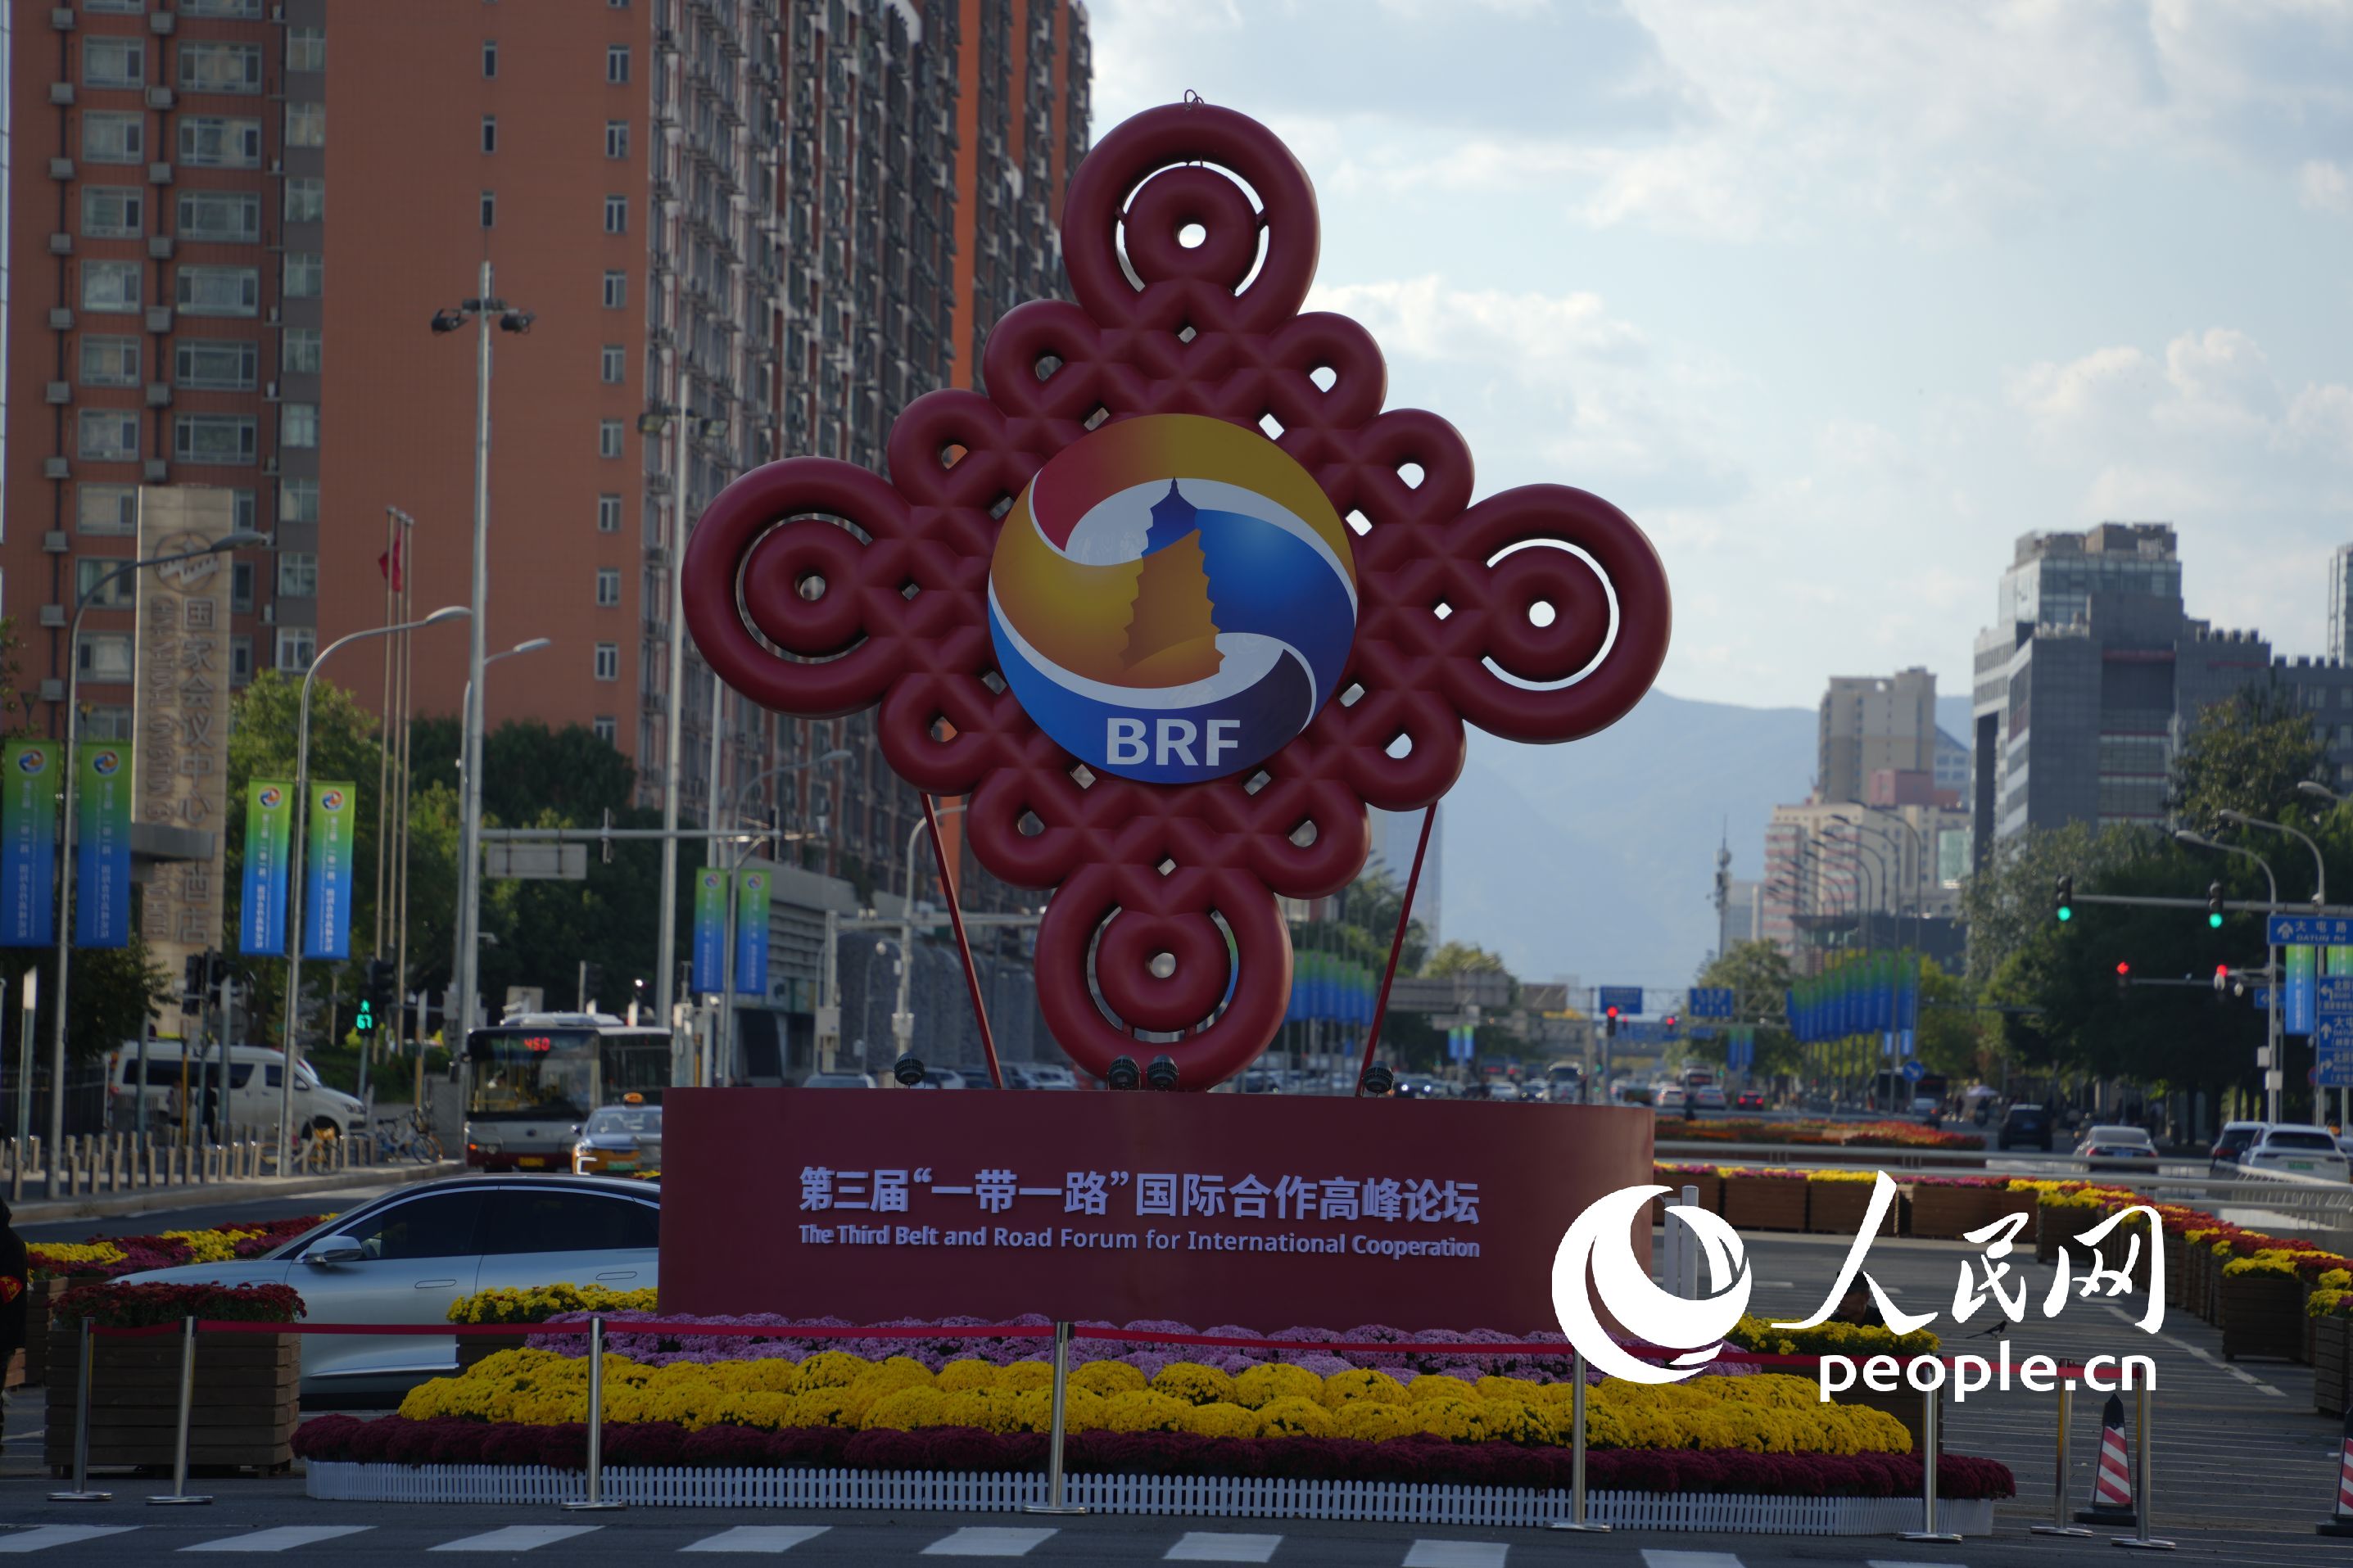 国家会议中心附近道路上的“红色中国结”主题雕塑。（人民网记者 王天乐摄）